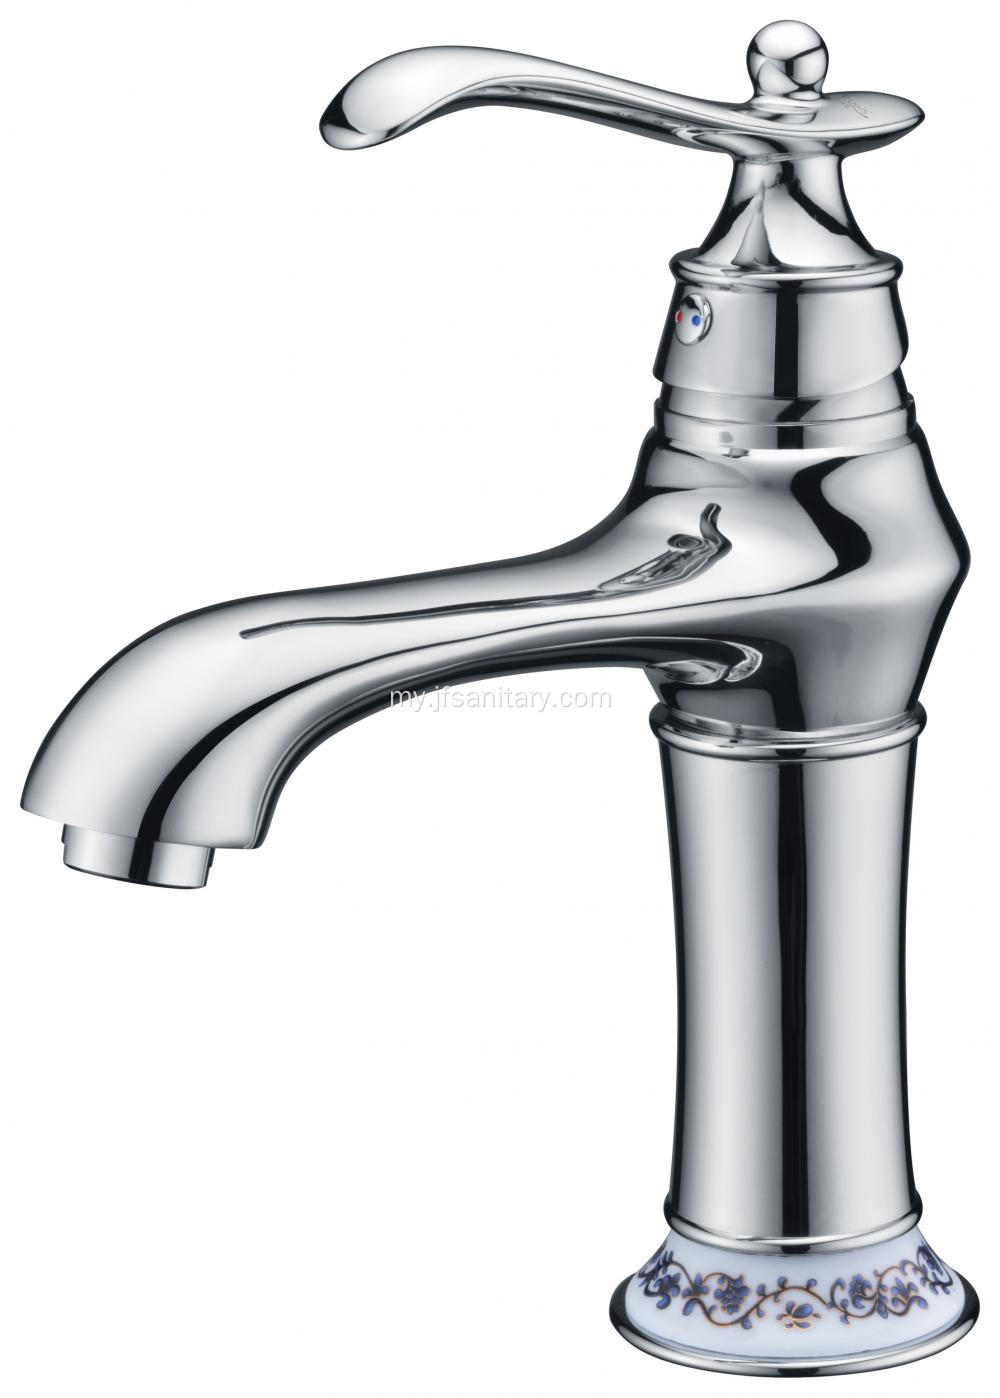 ကြွေကွင်းနှင့်အတူ Chrome တစ်ခုတည်းအပေါက် basin faucet